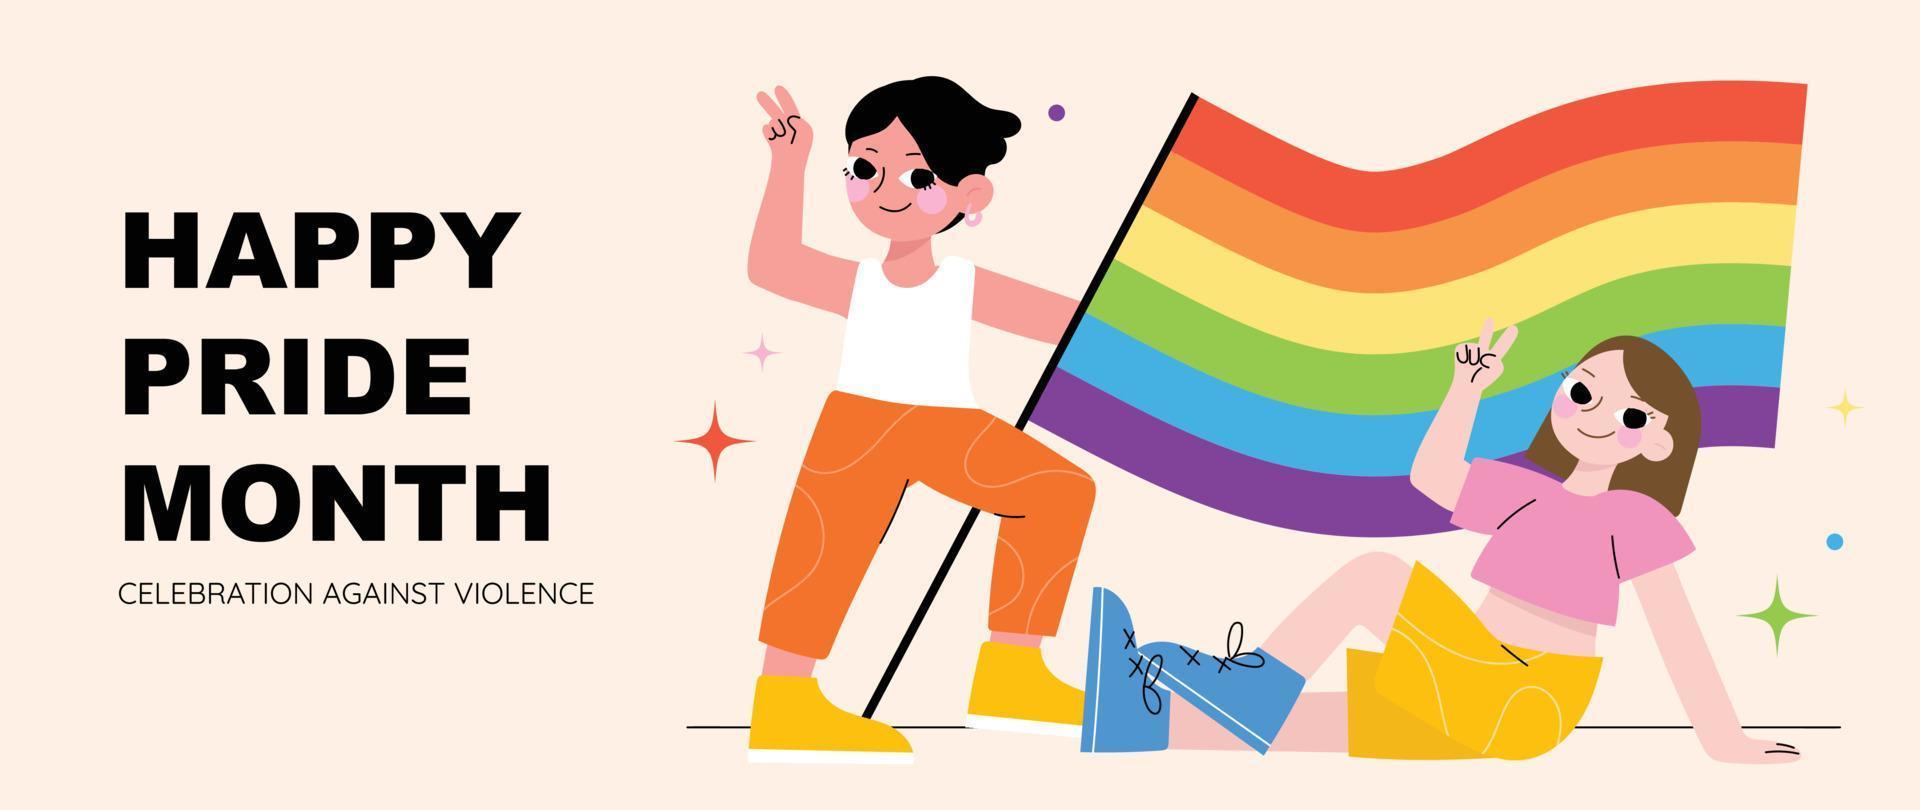 contento orgoglio mese sfondo. LGBTQ Comunità simboli con uomo e donna, arcobaleno bandiera. supporto design per celebrazione contro violenza, bisessuale, transgender, Genere uguaglianza, diritti concetto. vettore